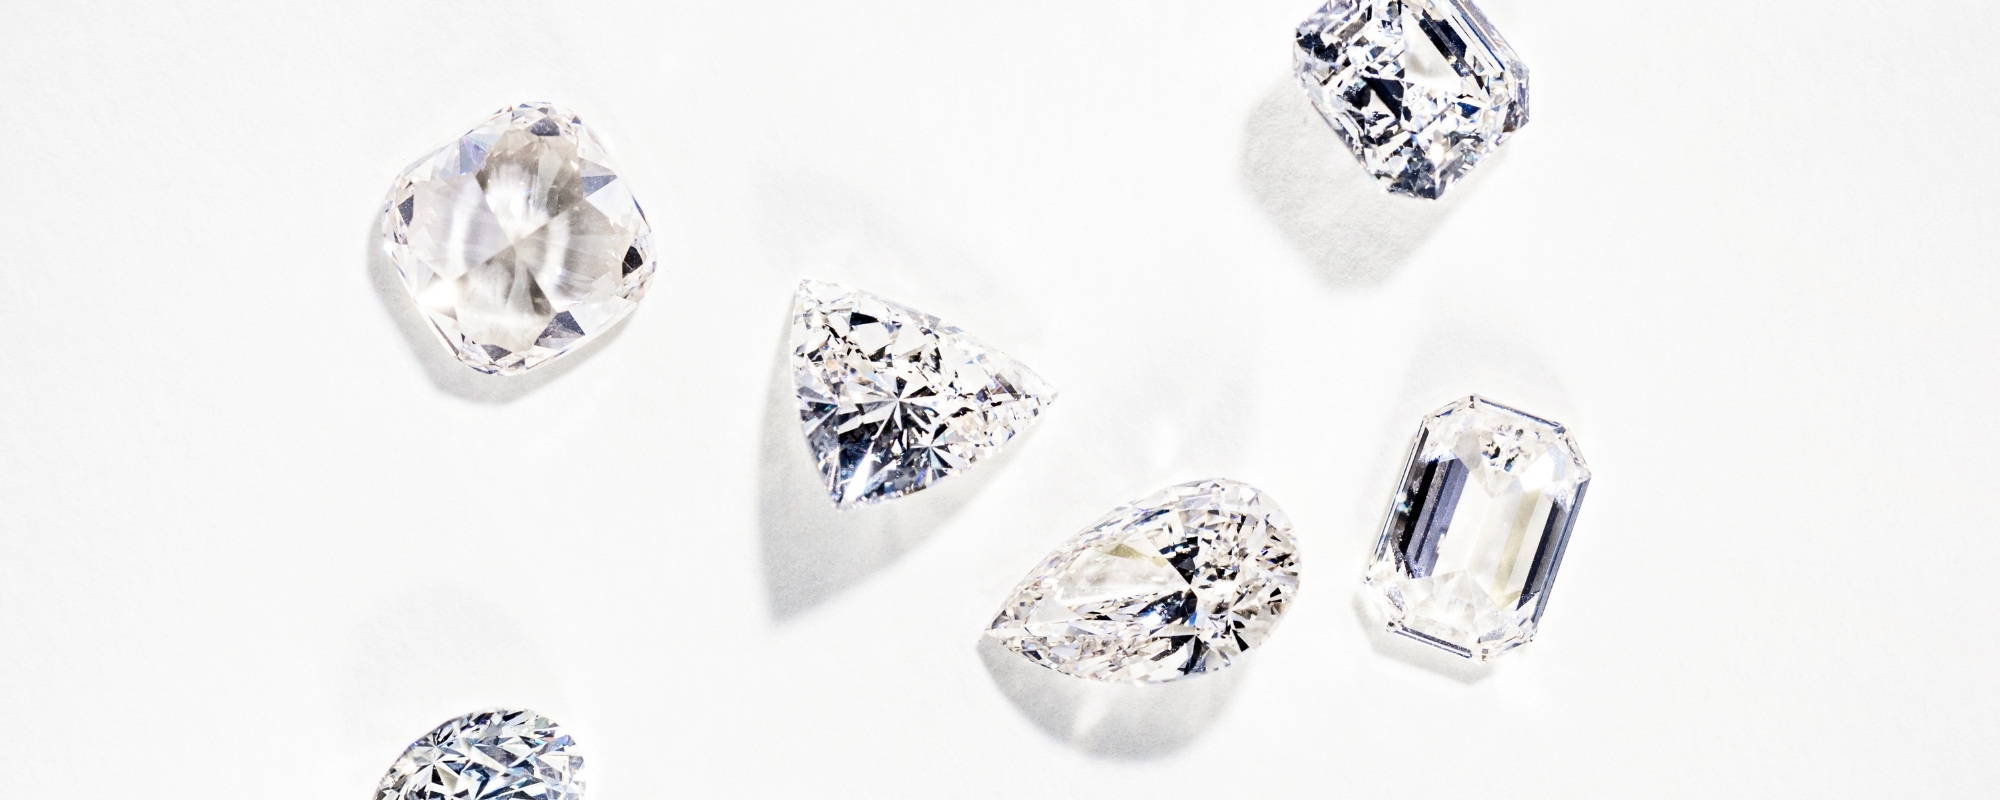 Diamond Mining vs Diamond Growing: Little Known Facts